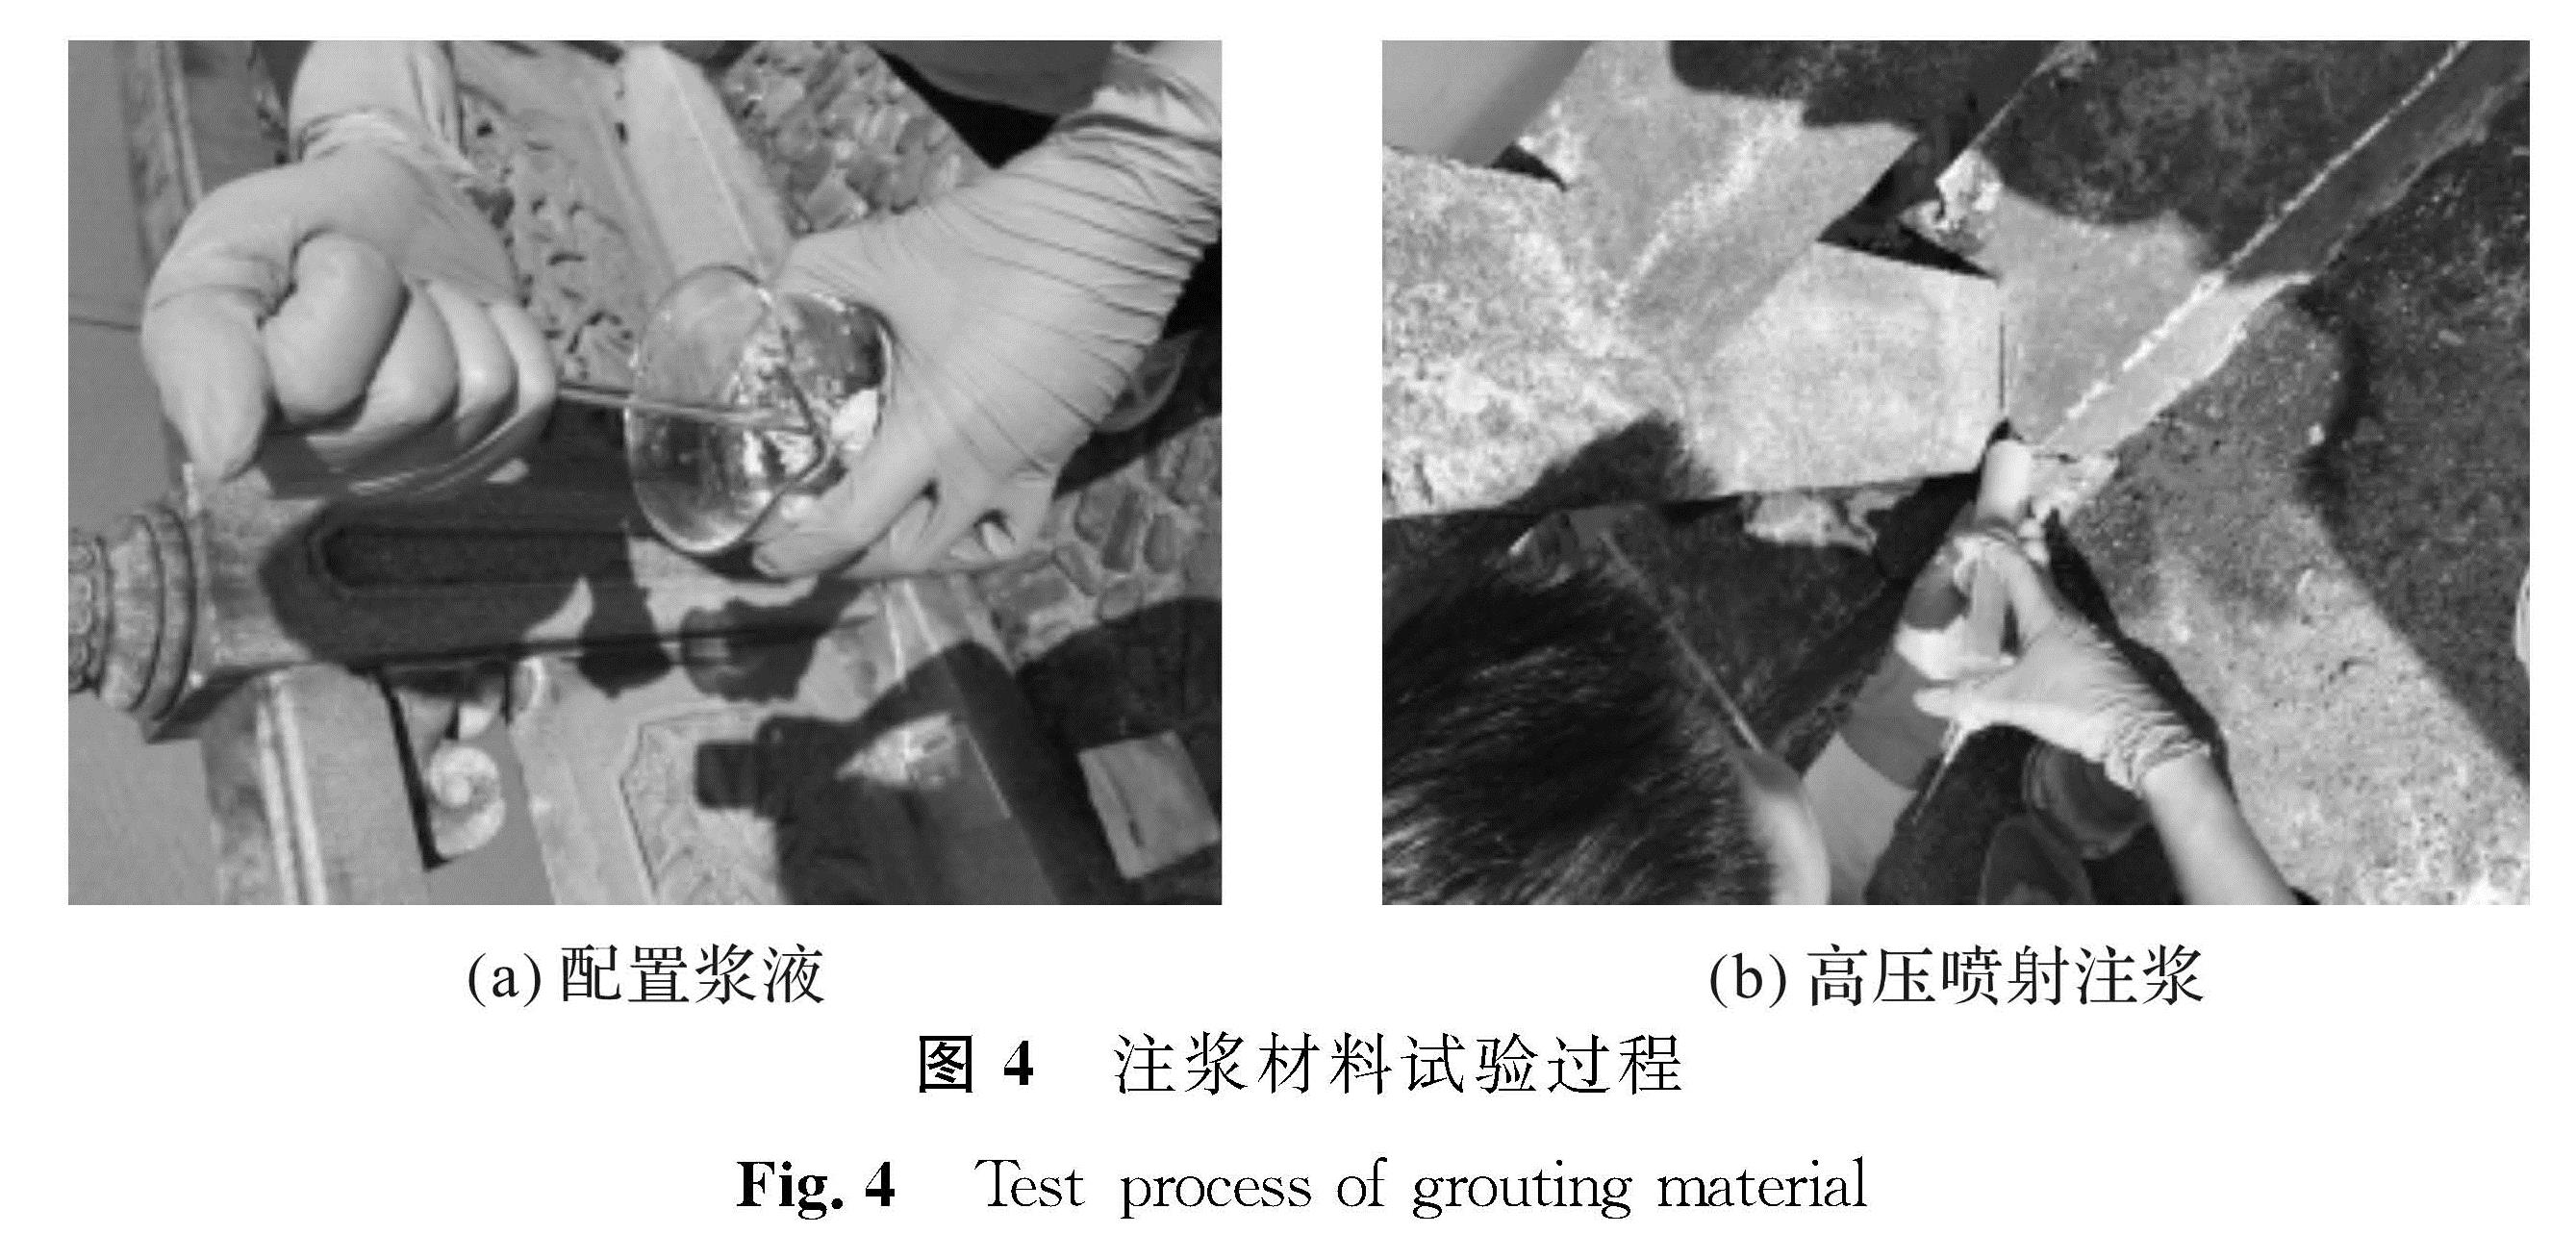 图4 注浆材料试验过程<br/>Fig.4 Test process of grouting material